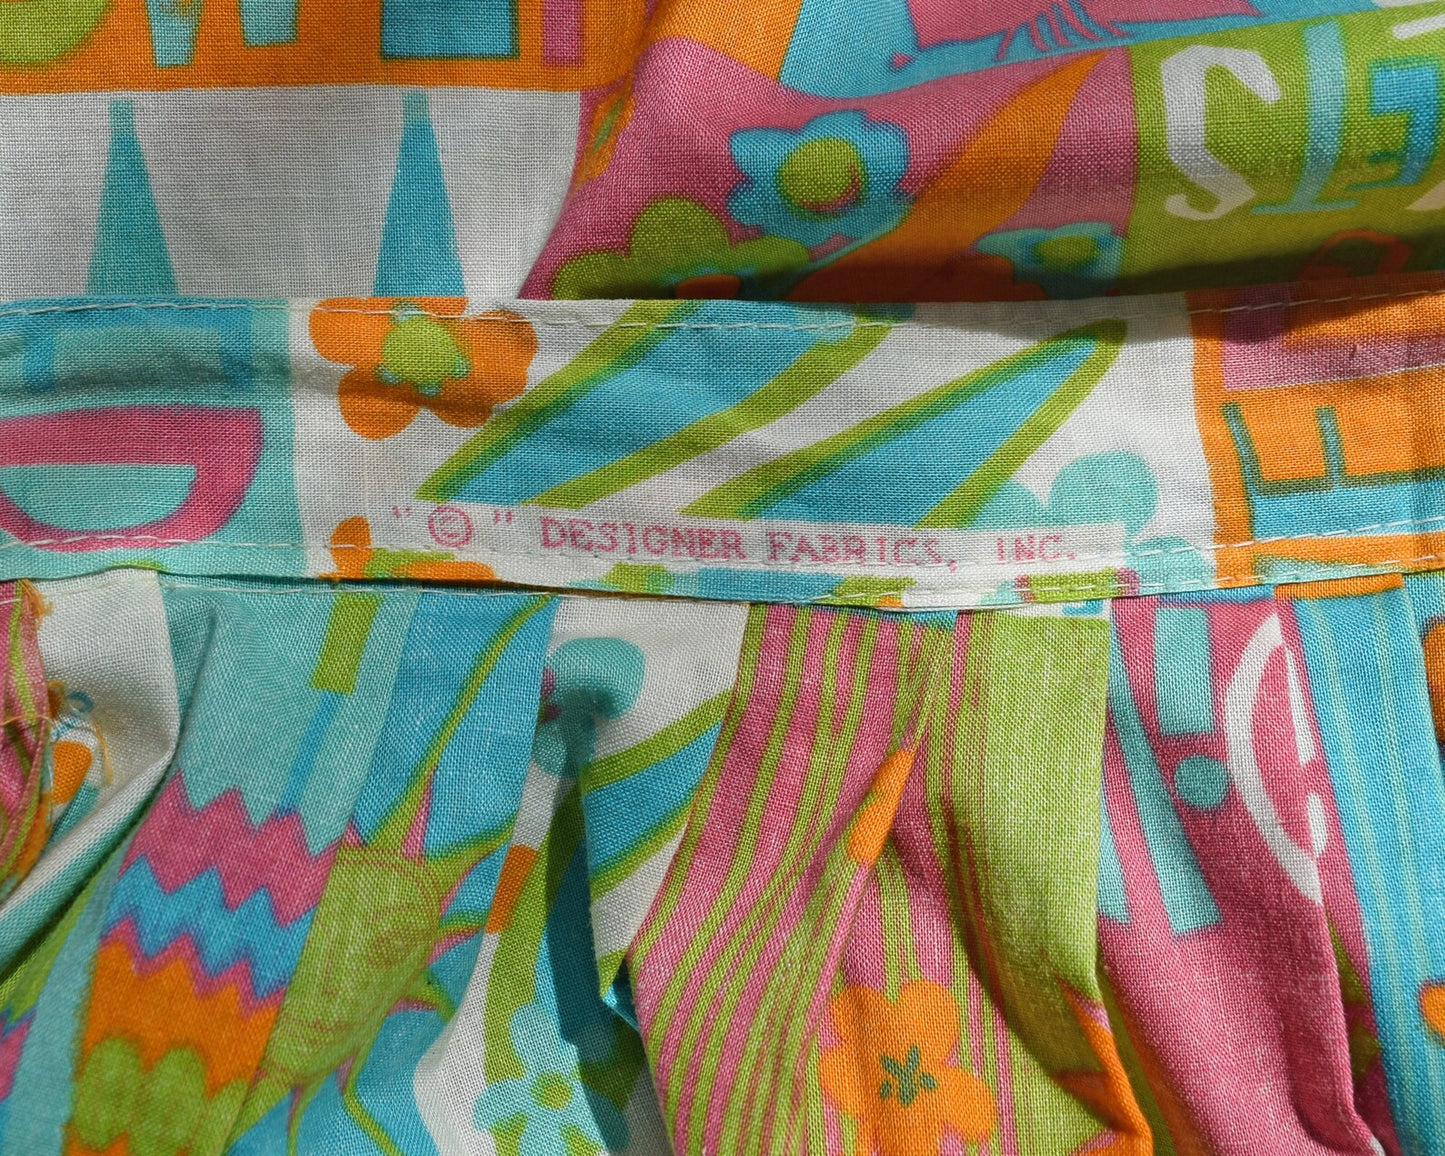 Close up of the designer fabrics, inc name